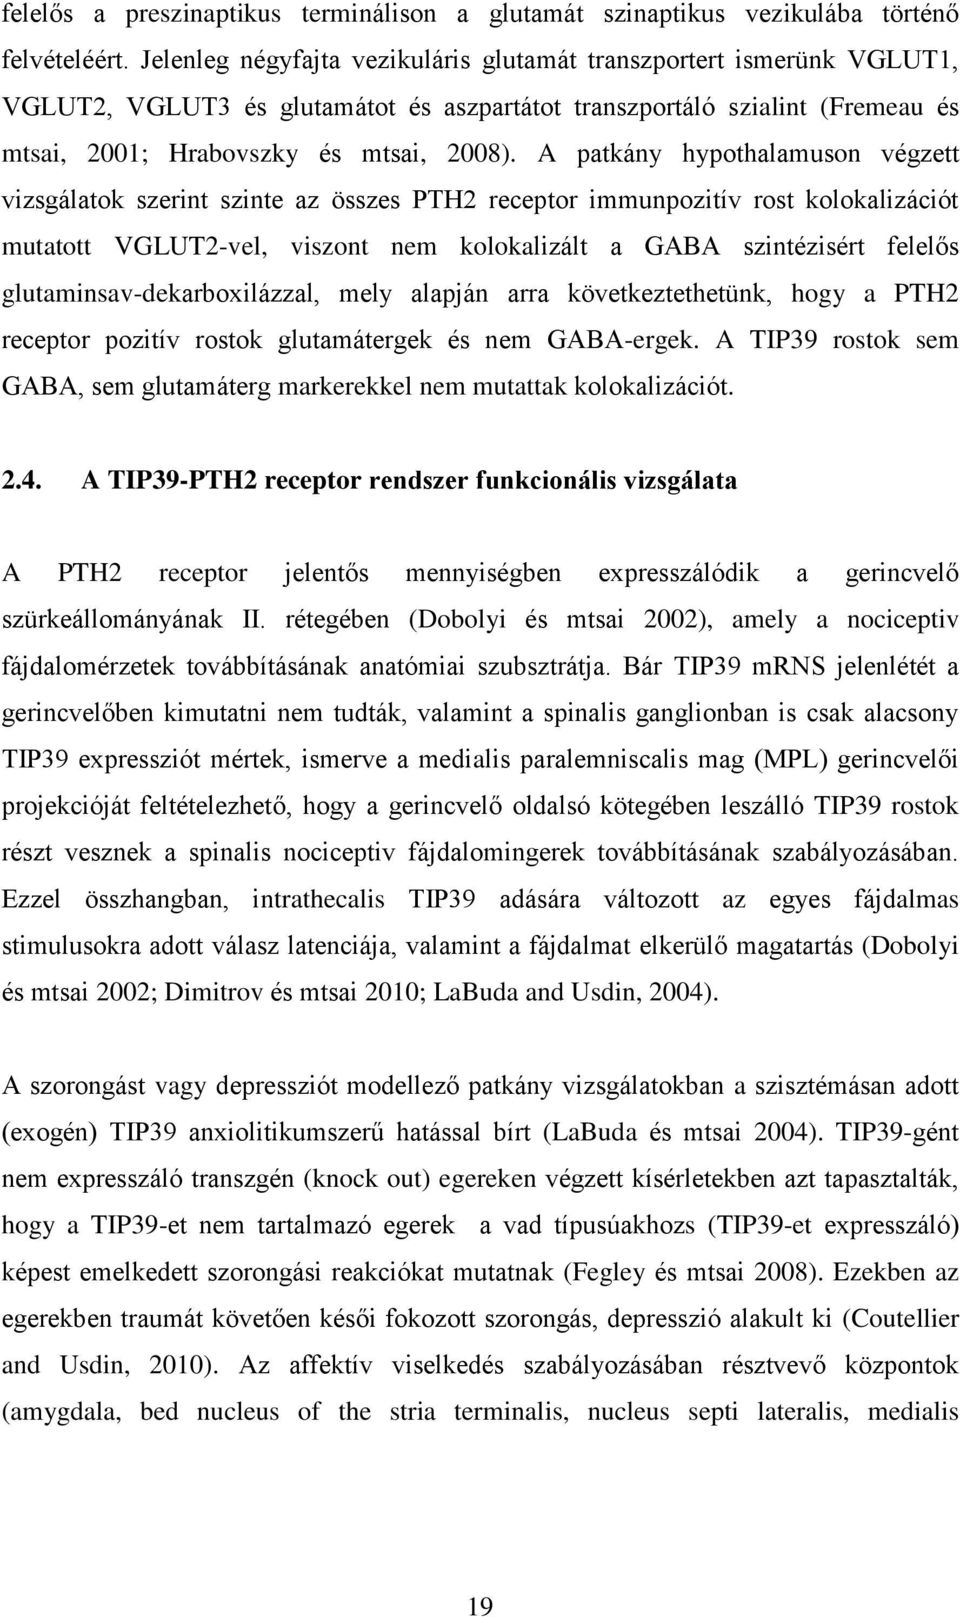 A patkány hypothalamuson végzett vizsgálatok szerint szinte az összes PTH2 receptor immunpozitív rost kolokalizációt mutatott VGLUT2-vel, viszont nem kolokalizált a GABA szintézisért felelős